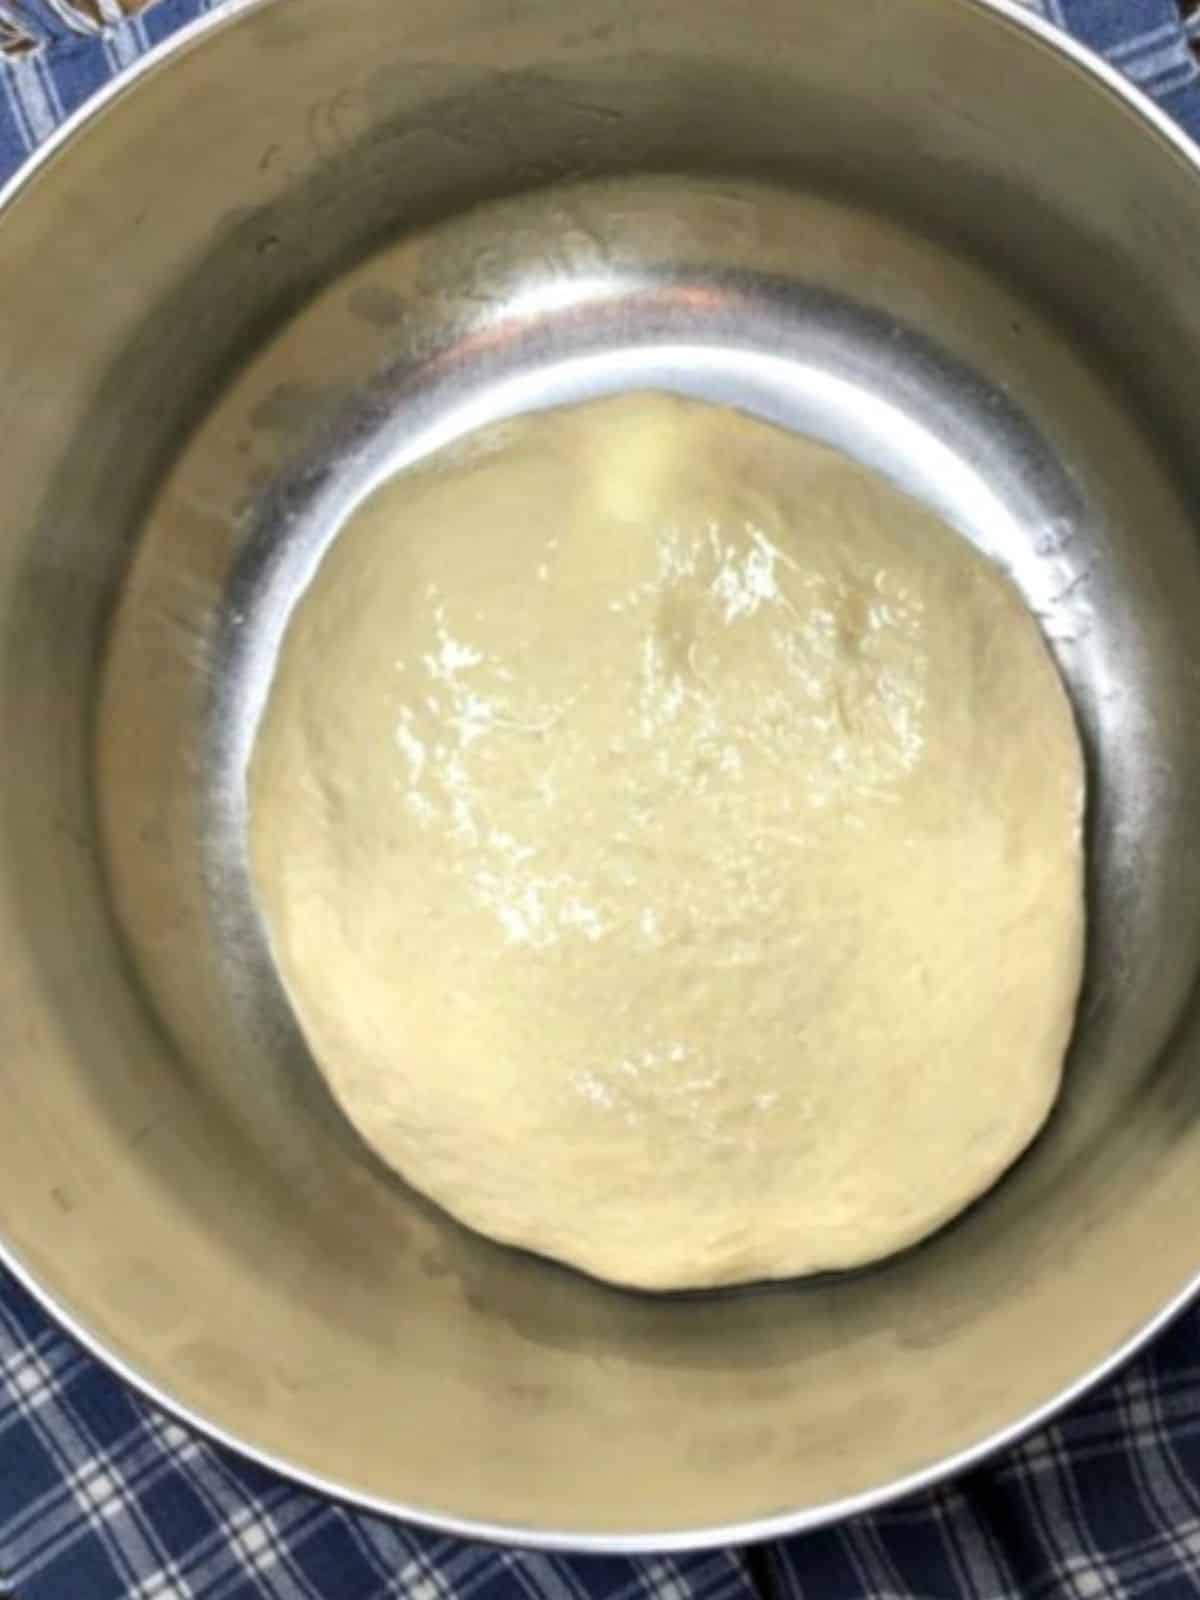 pizza dough before rising in metal bowl.